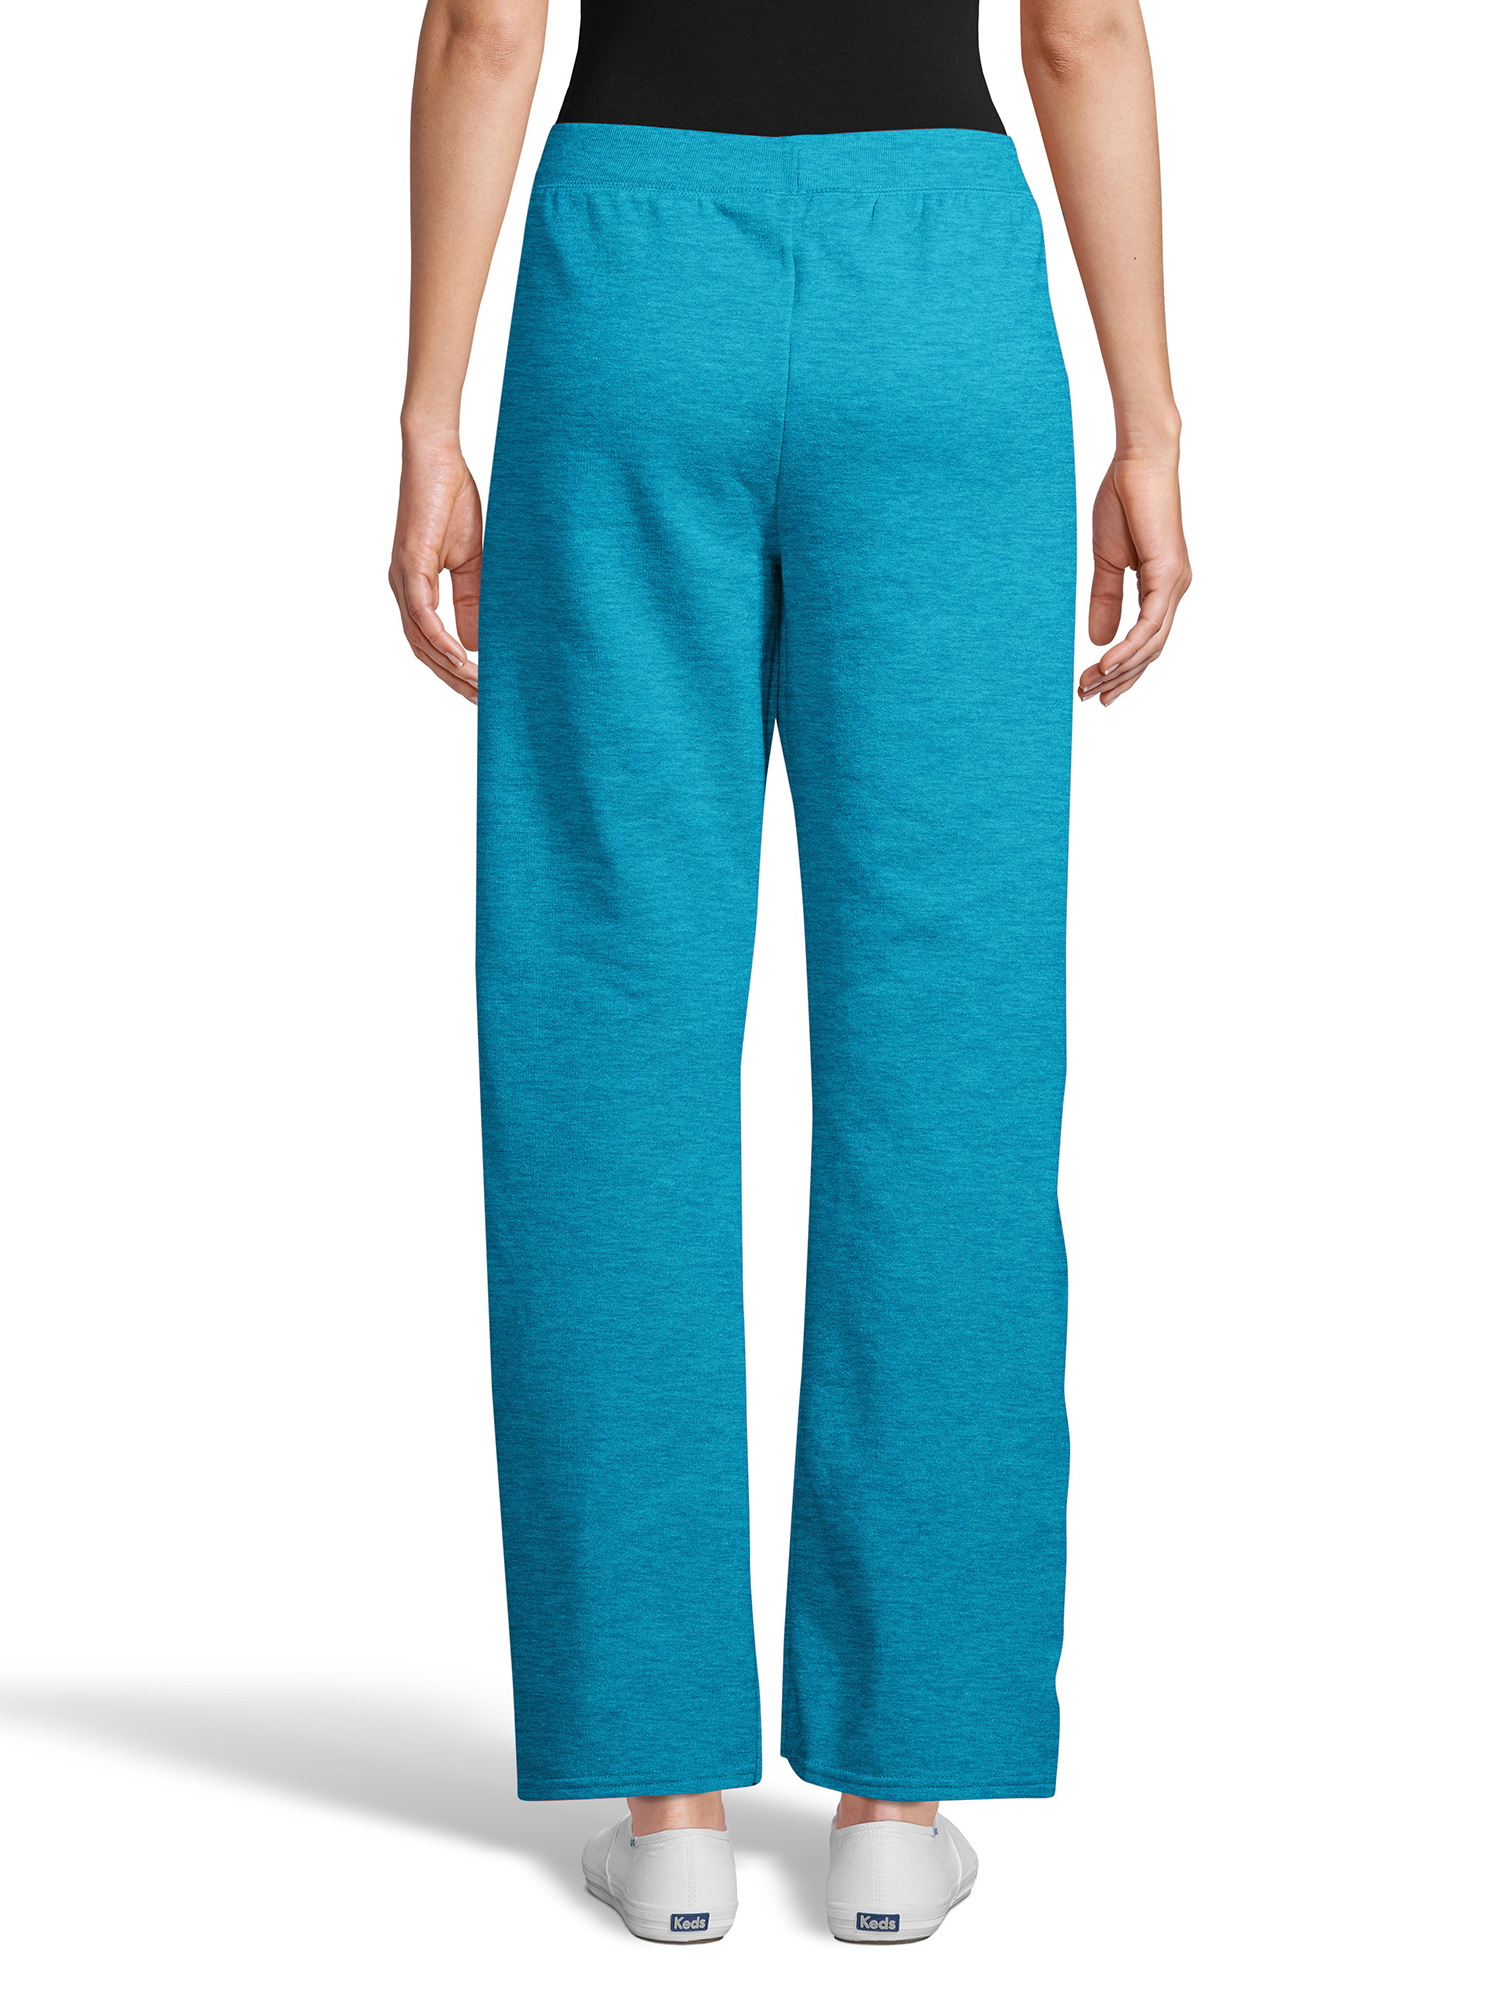 Hanes ComfortSoft EcoSmart Women's Open Bottom Fleece Sweatpants, Sizes S-XXL and Petite - image 3 of 6